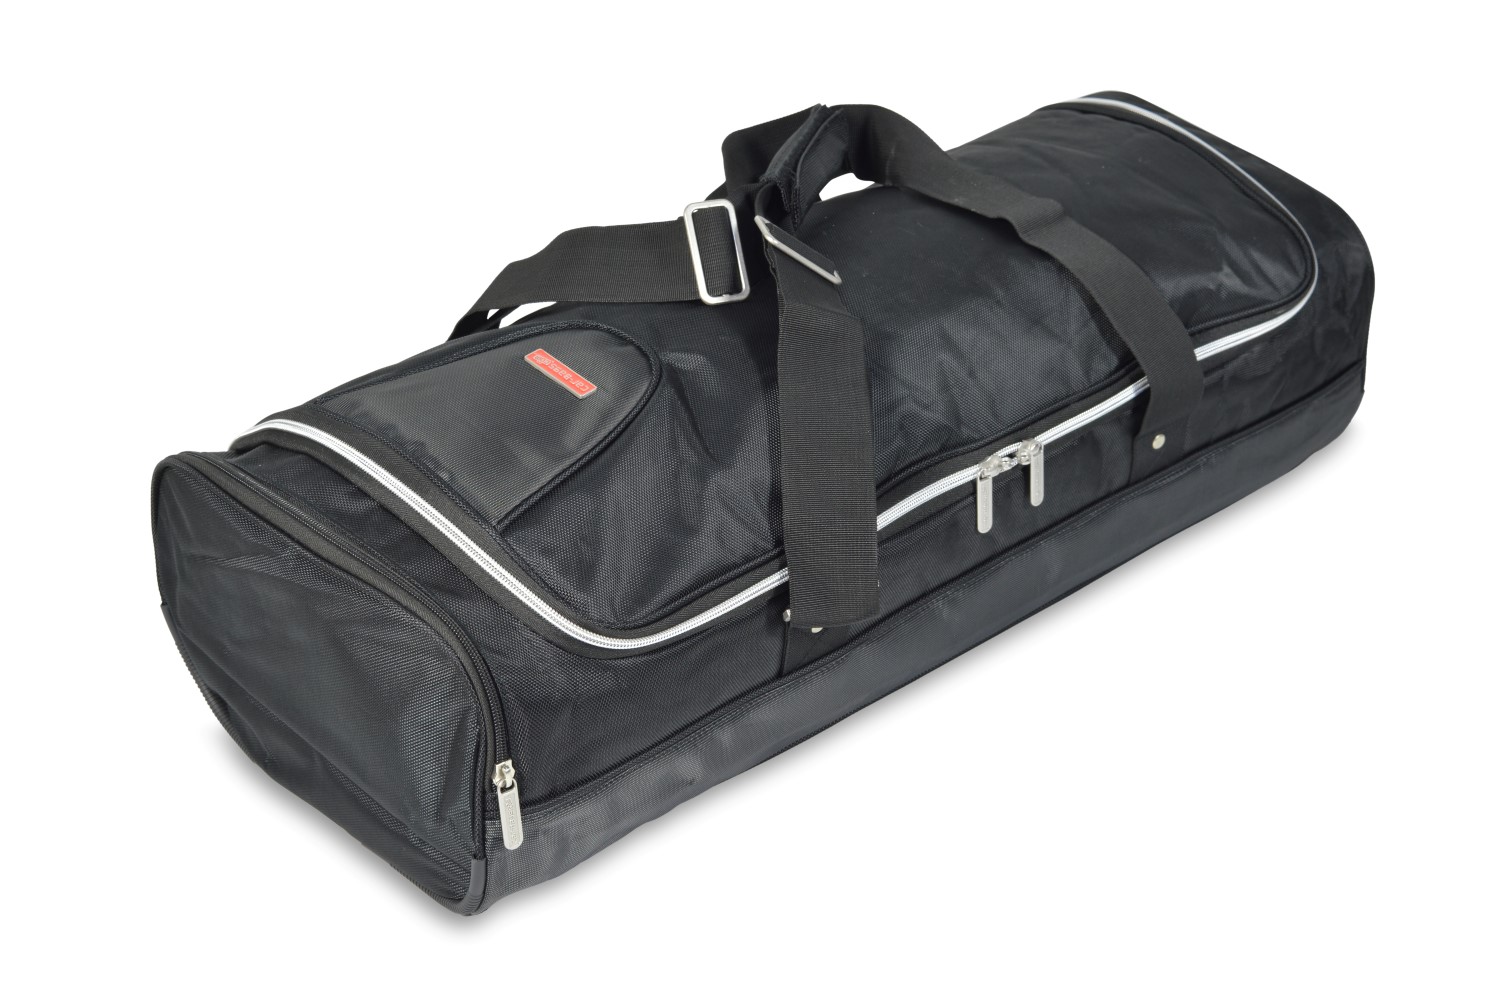 Travel bag - 31x21x70cm (WxHxL)